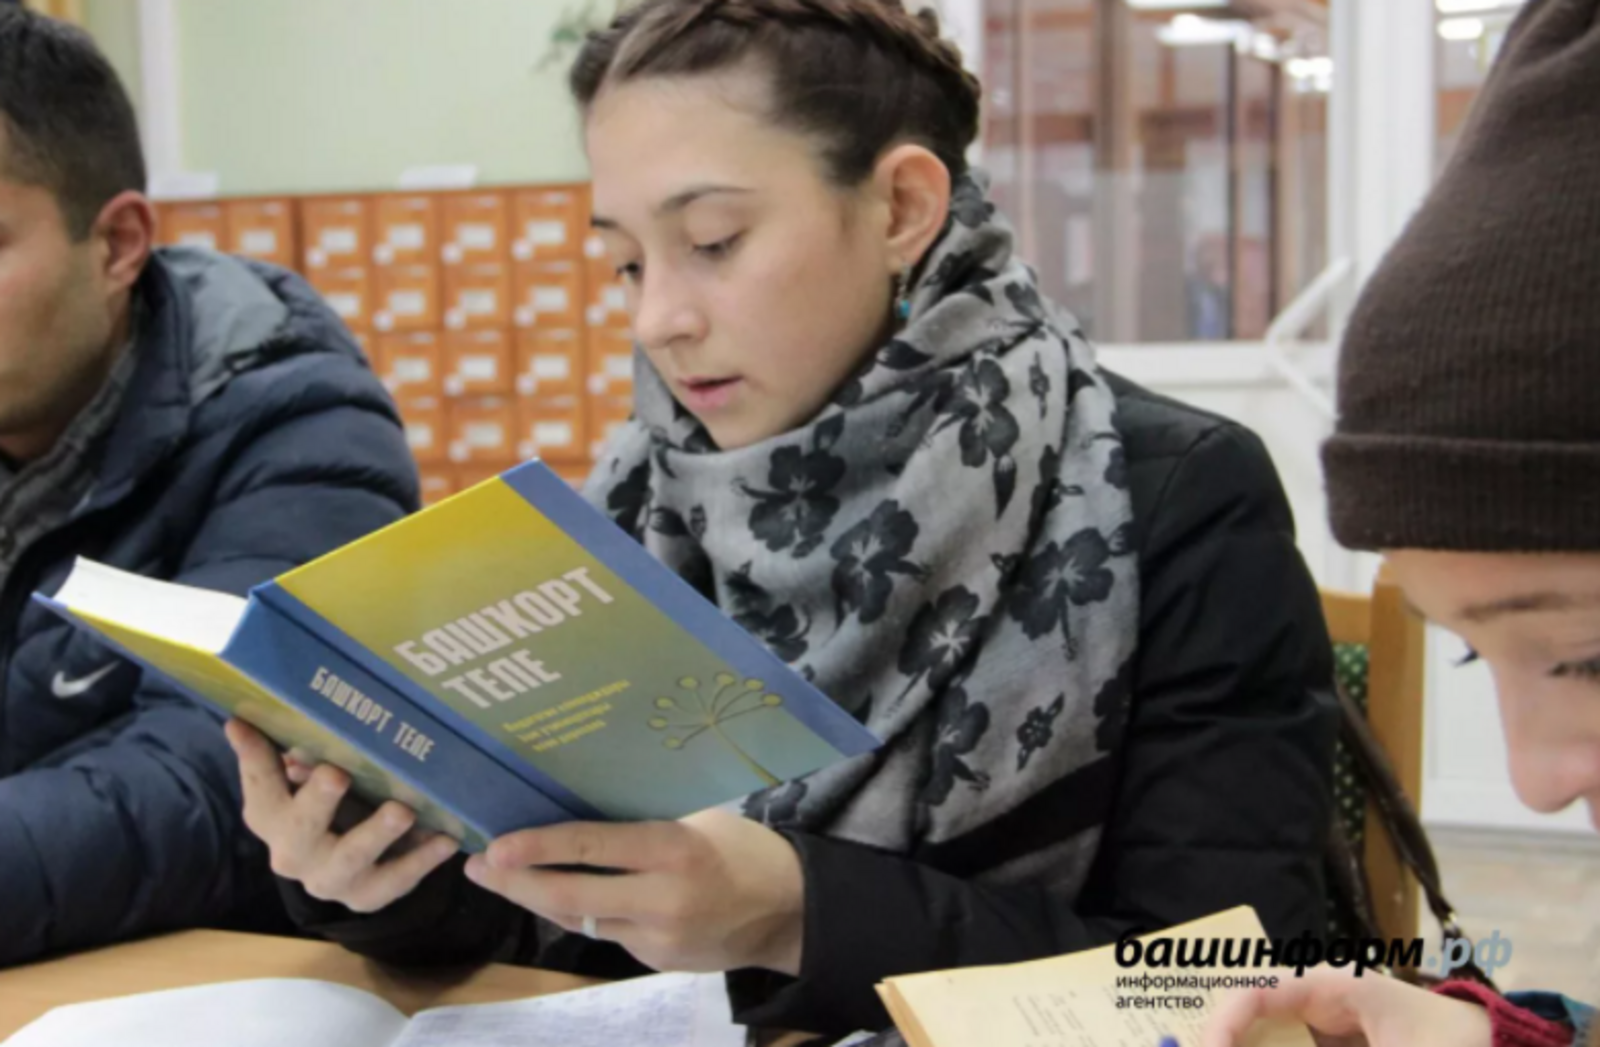 В Башкирии объявлен конкурс на лучший видеоролик о башкирском языке